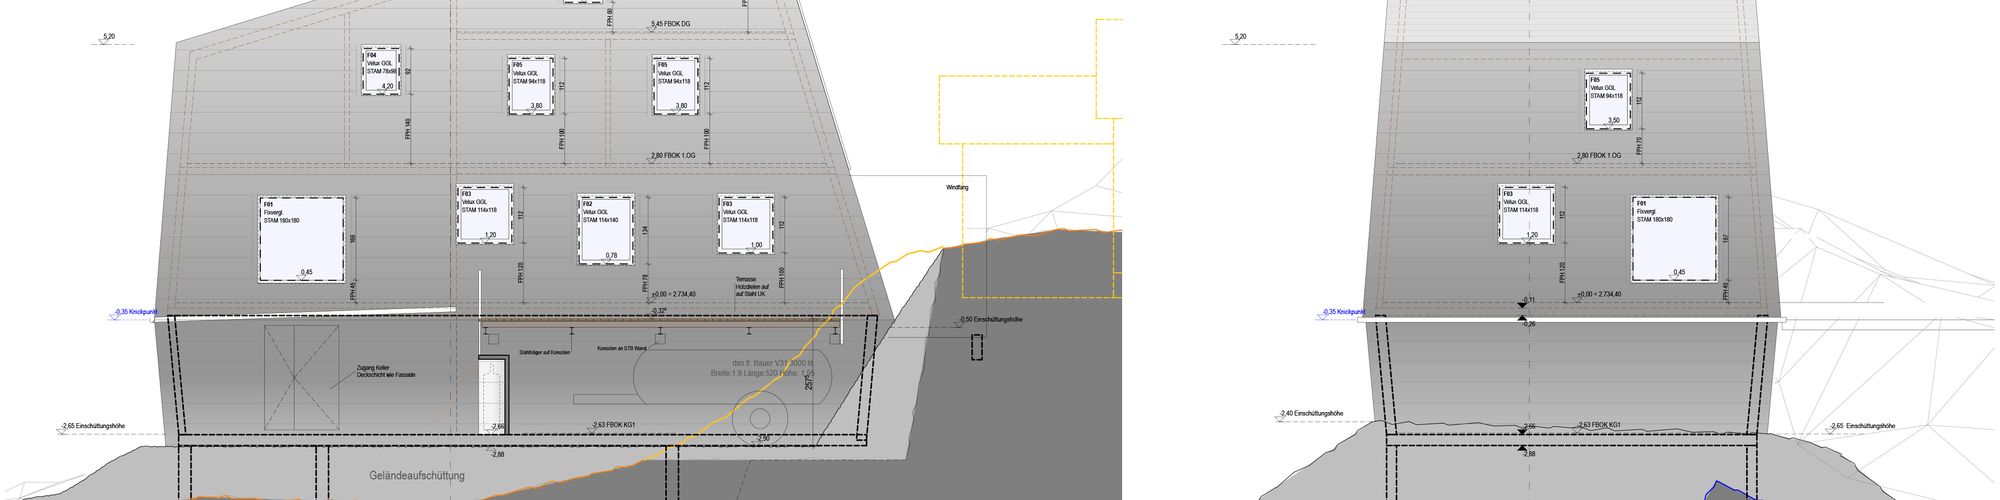 Plan for the Seethalerhuette © dreiplus Architekten